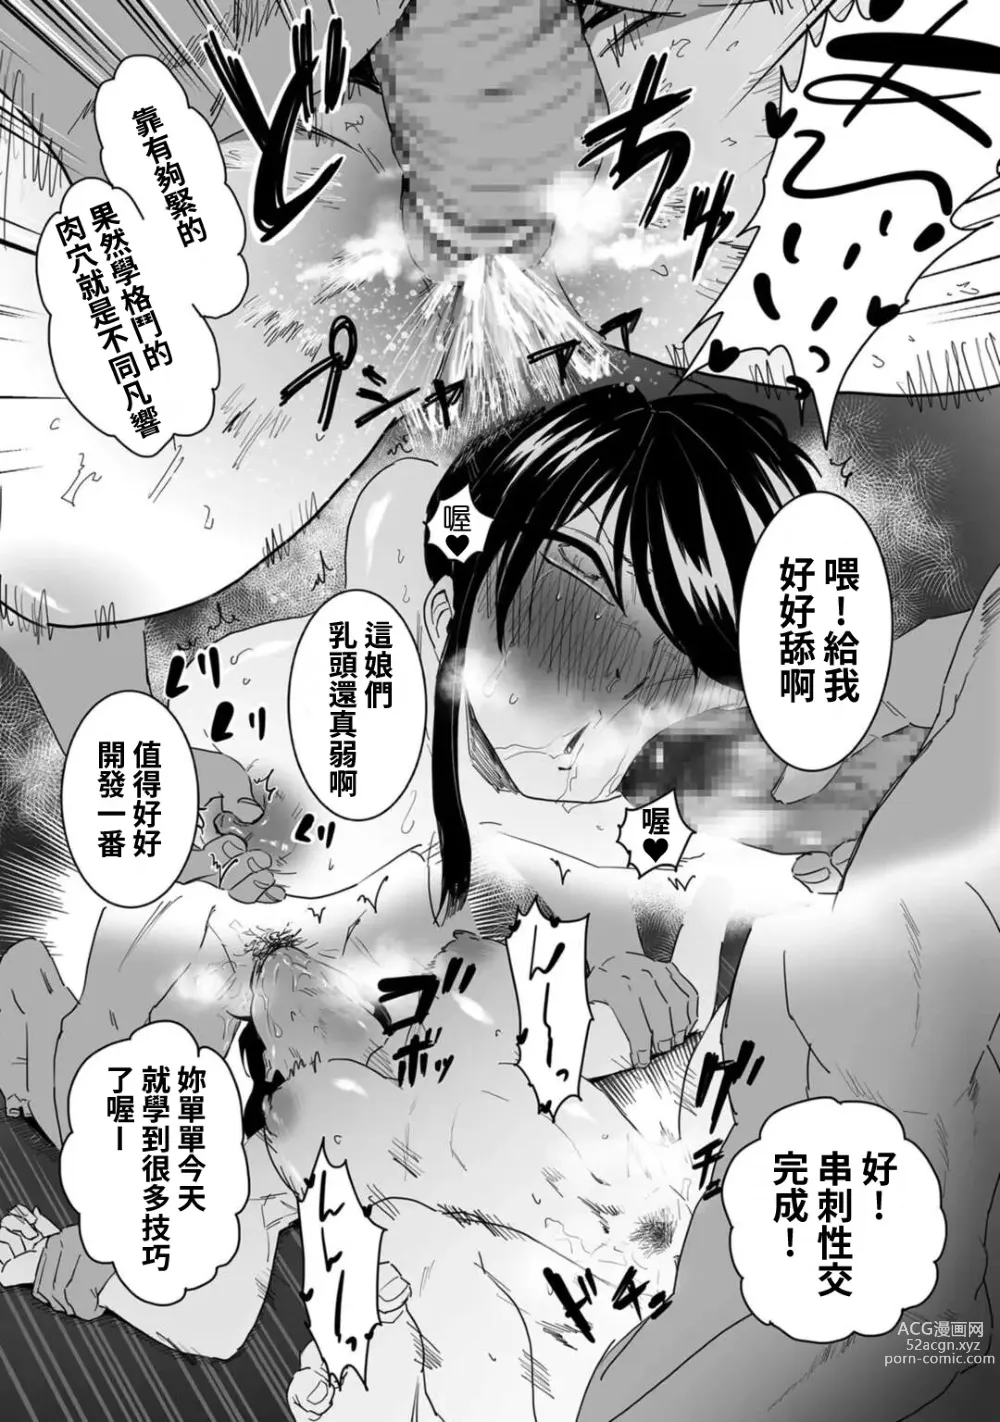 Page 11 of manga Shushou, Otsu!